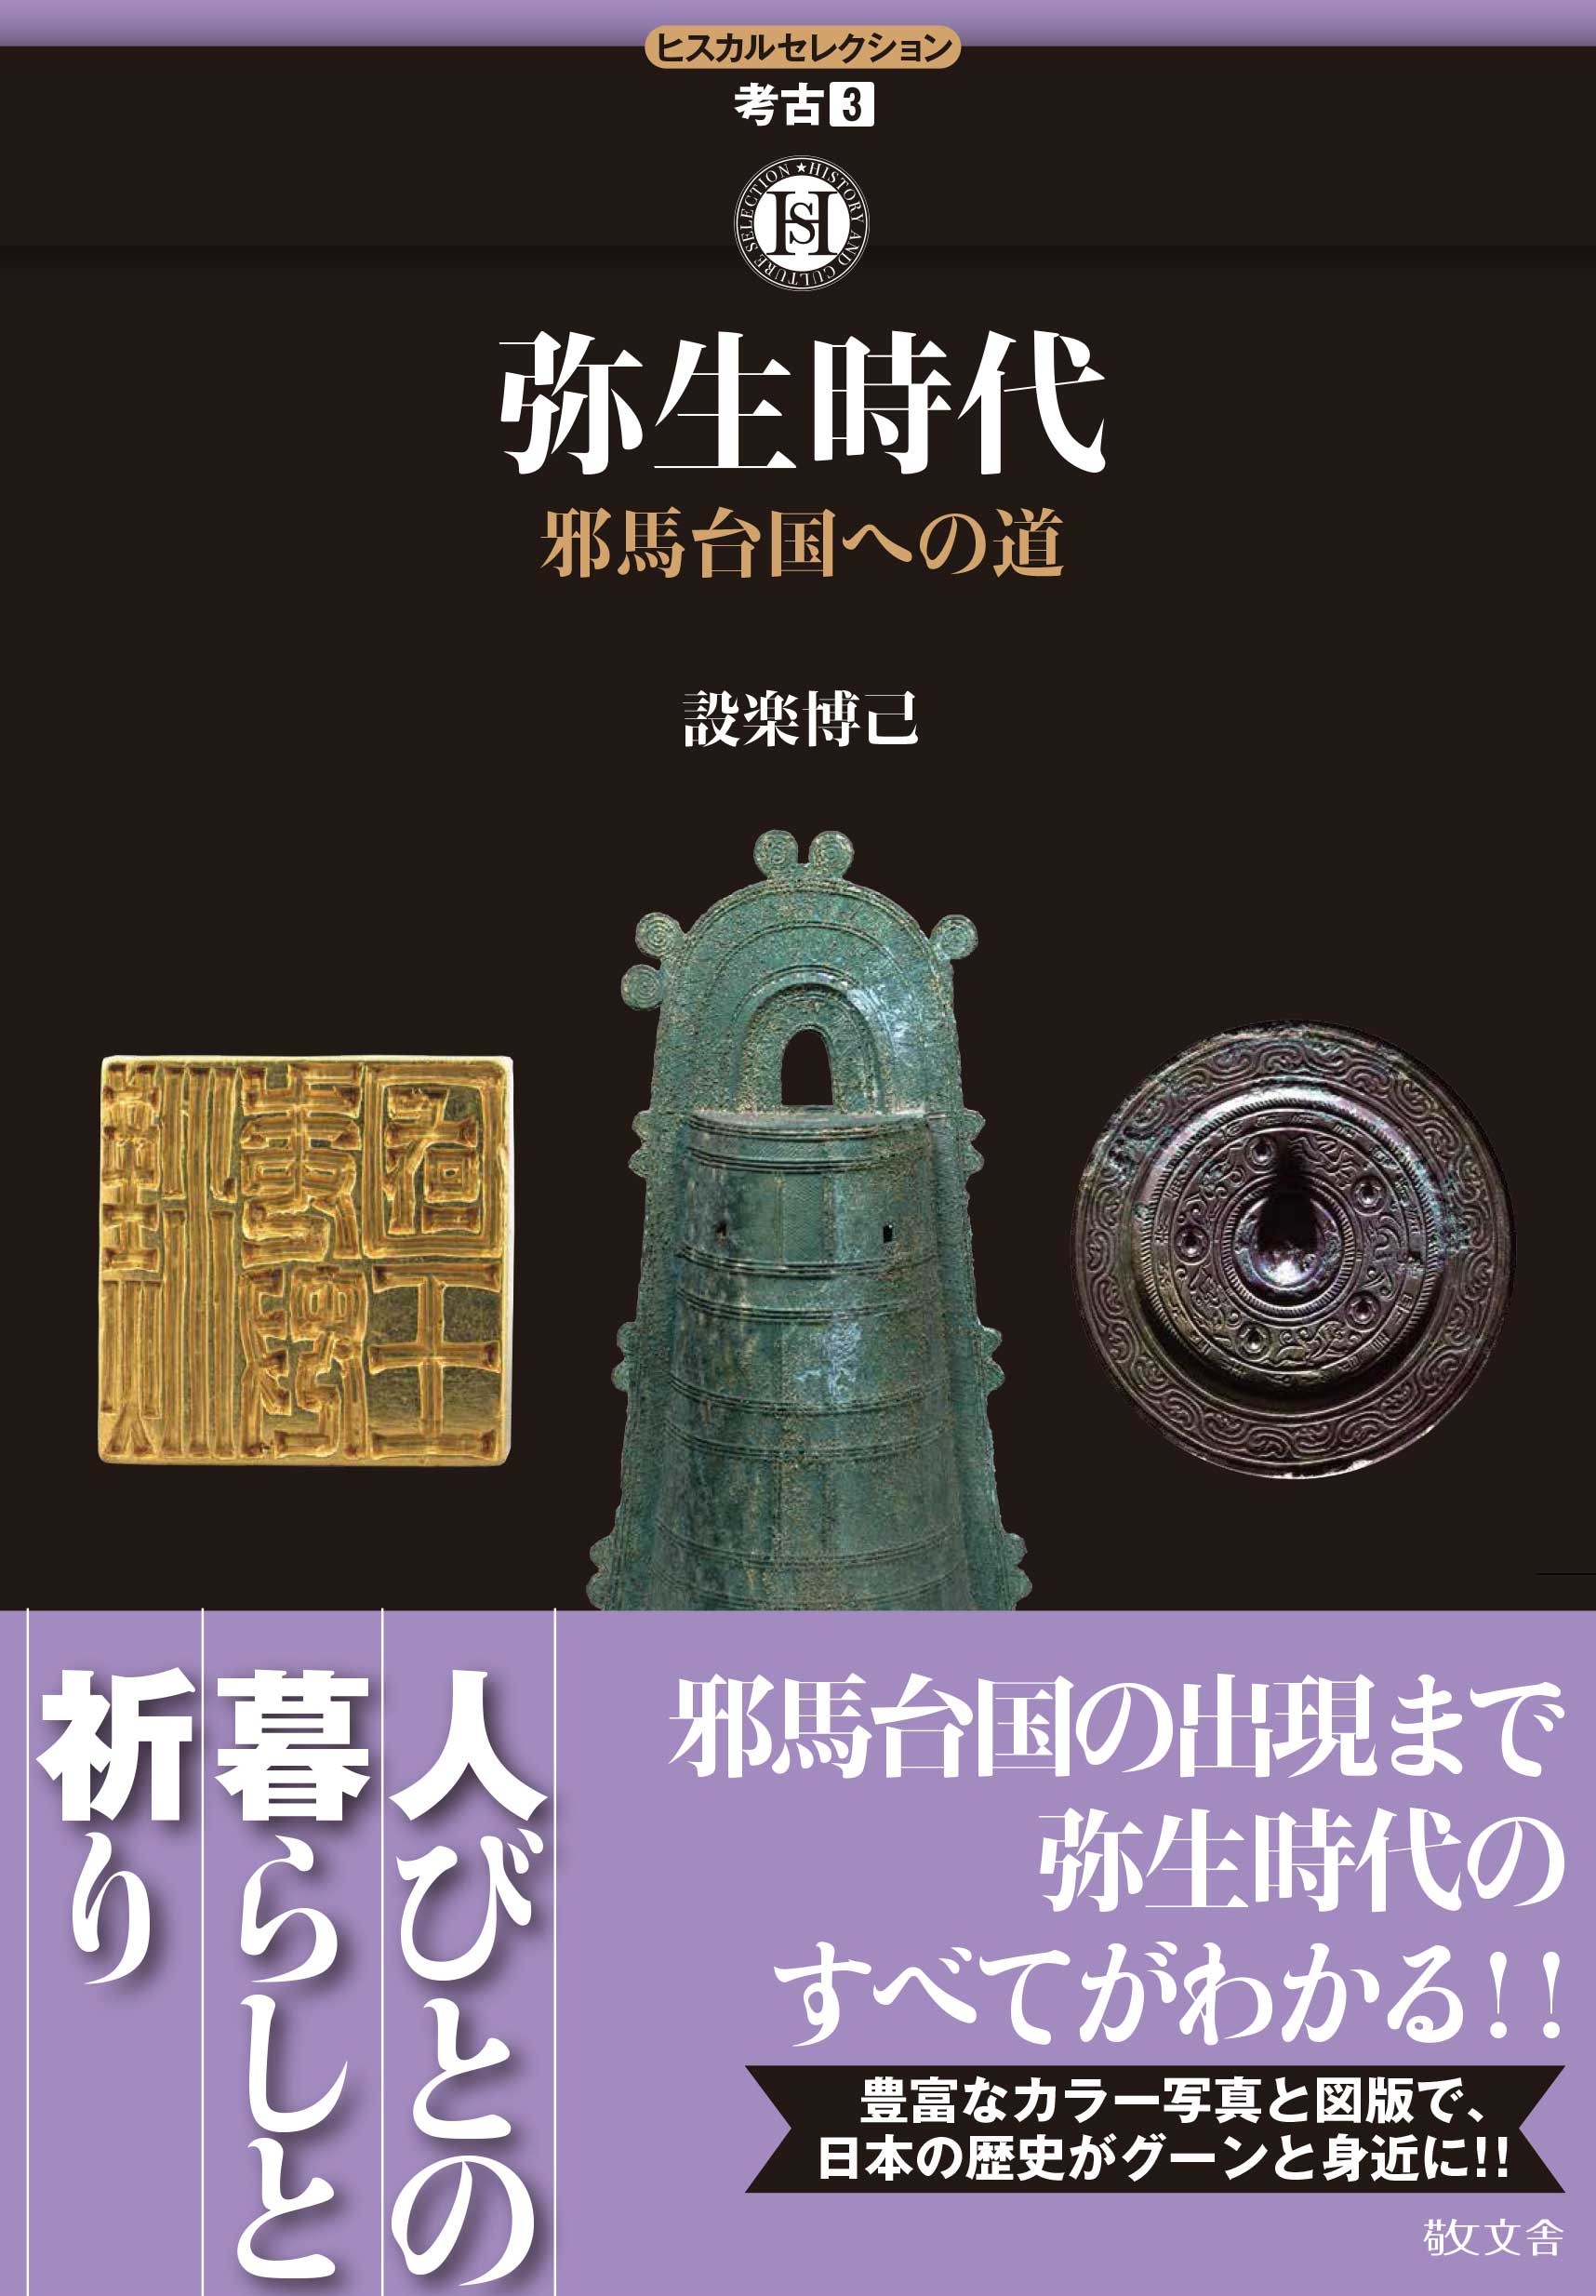 UTokyo BiblioPlaza - 弥生時代人物造形品の研究